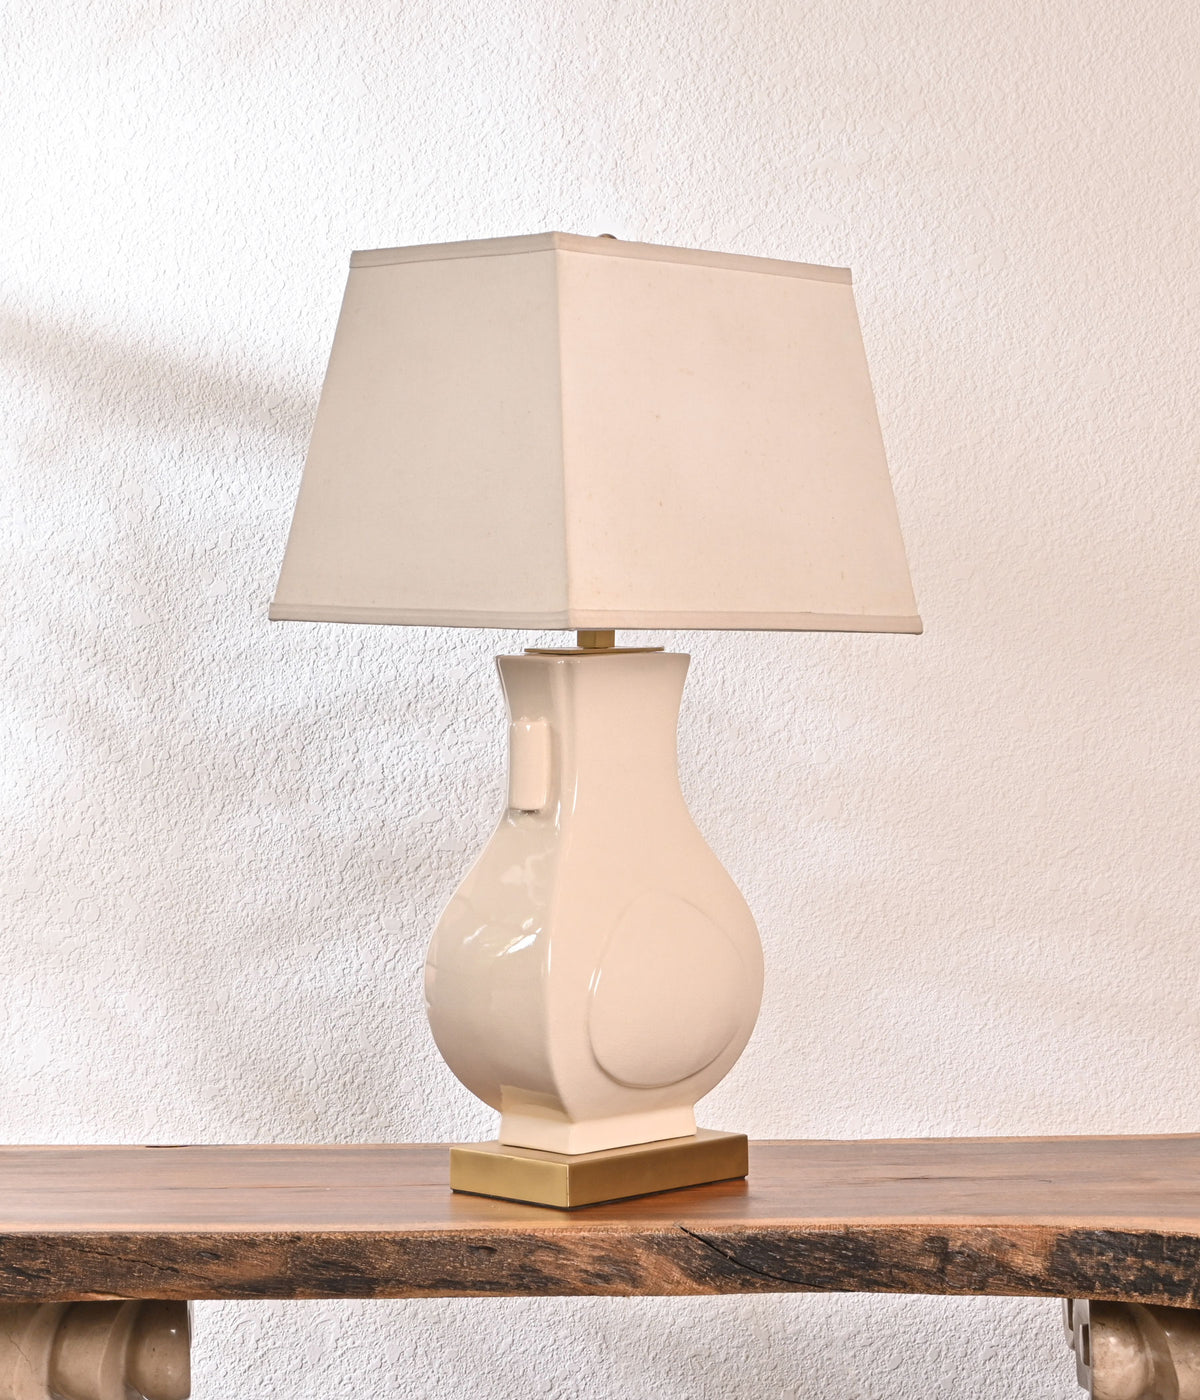 Celestial Pottery white lamp